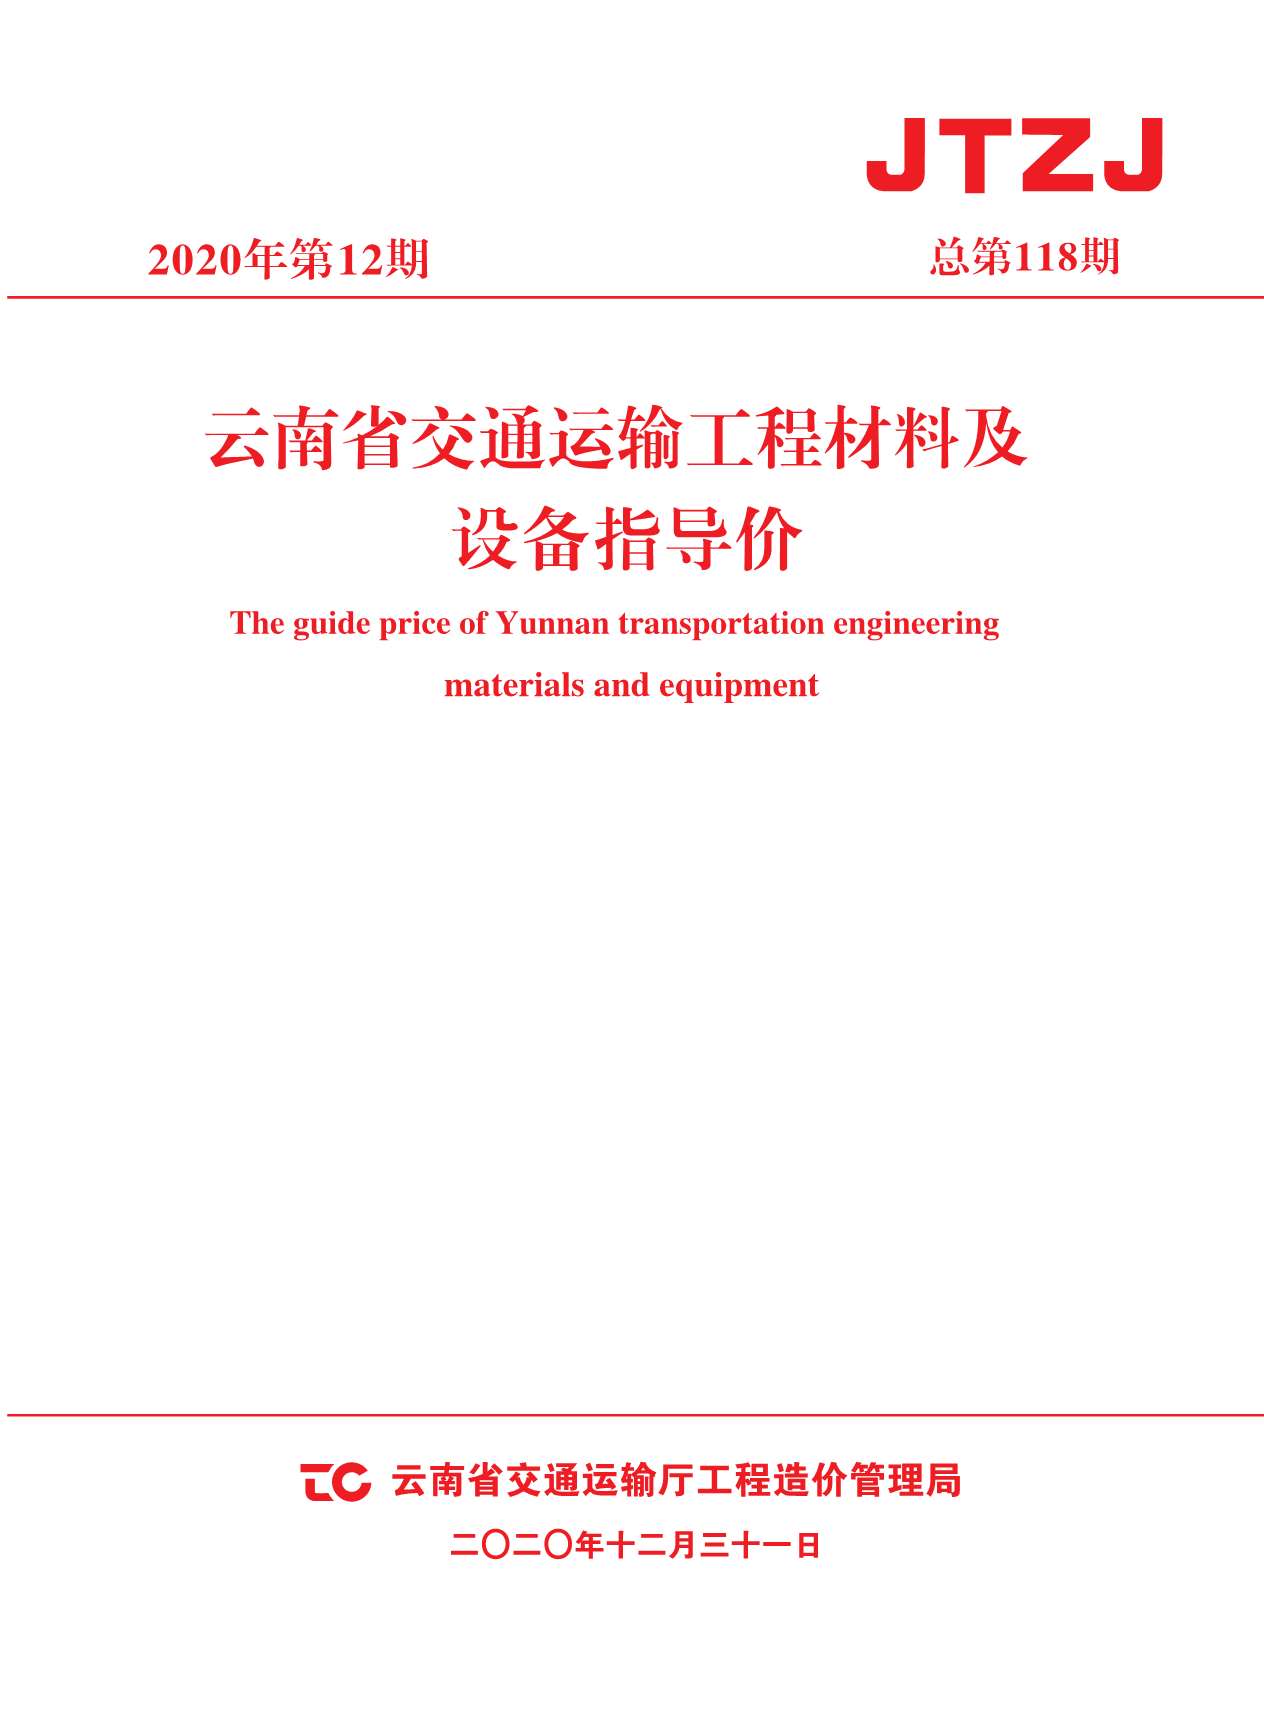 云南省2020年12月交通运输工程材料及设备信息价